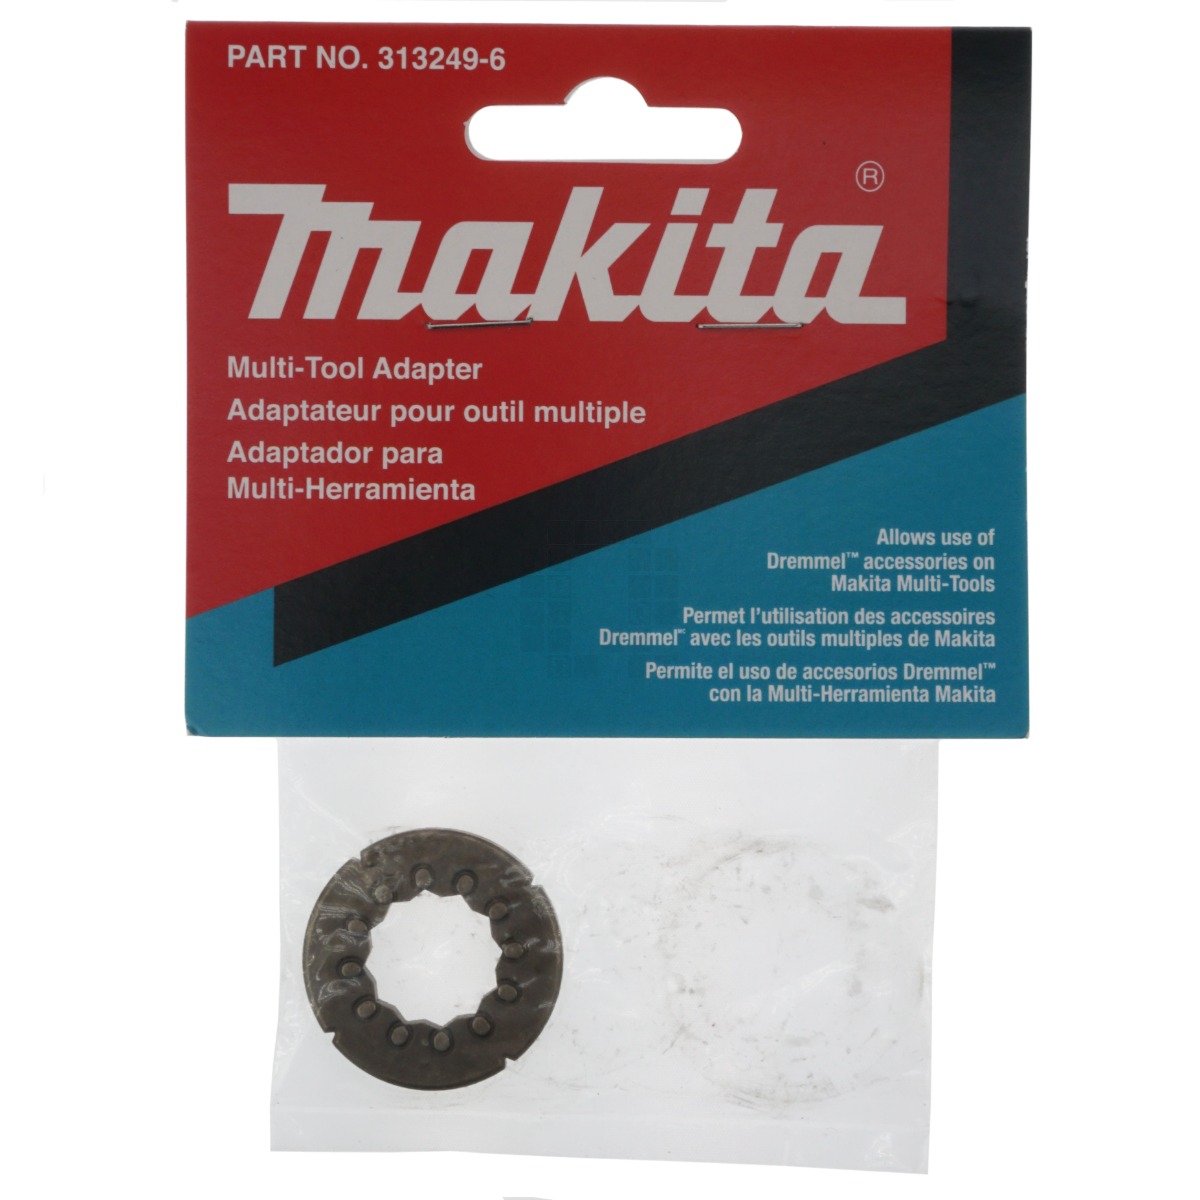 Makita 313249-6 Multi-Tool Adapter (Dremel)